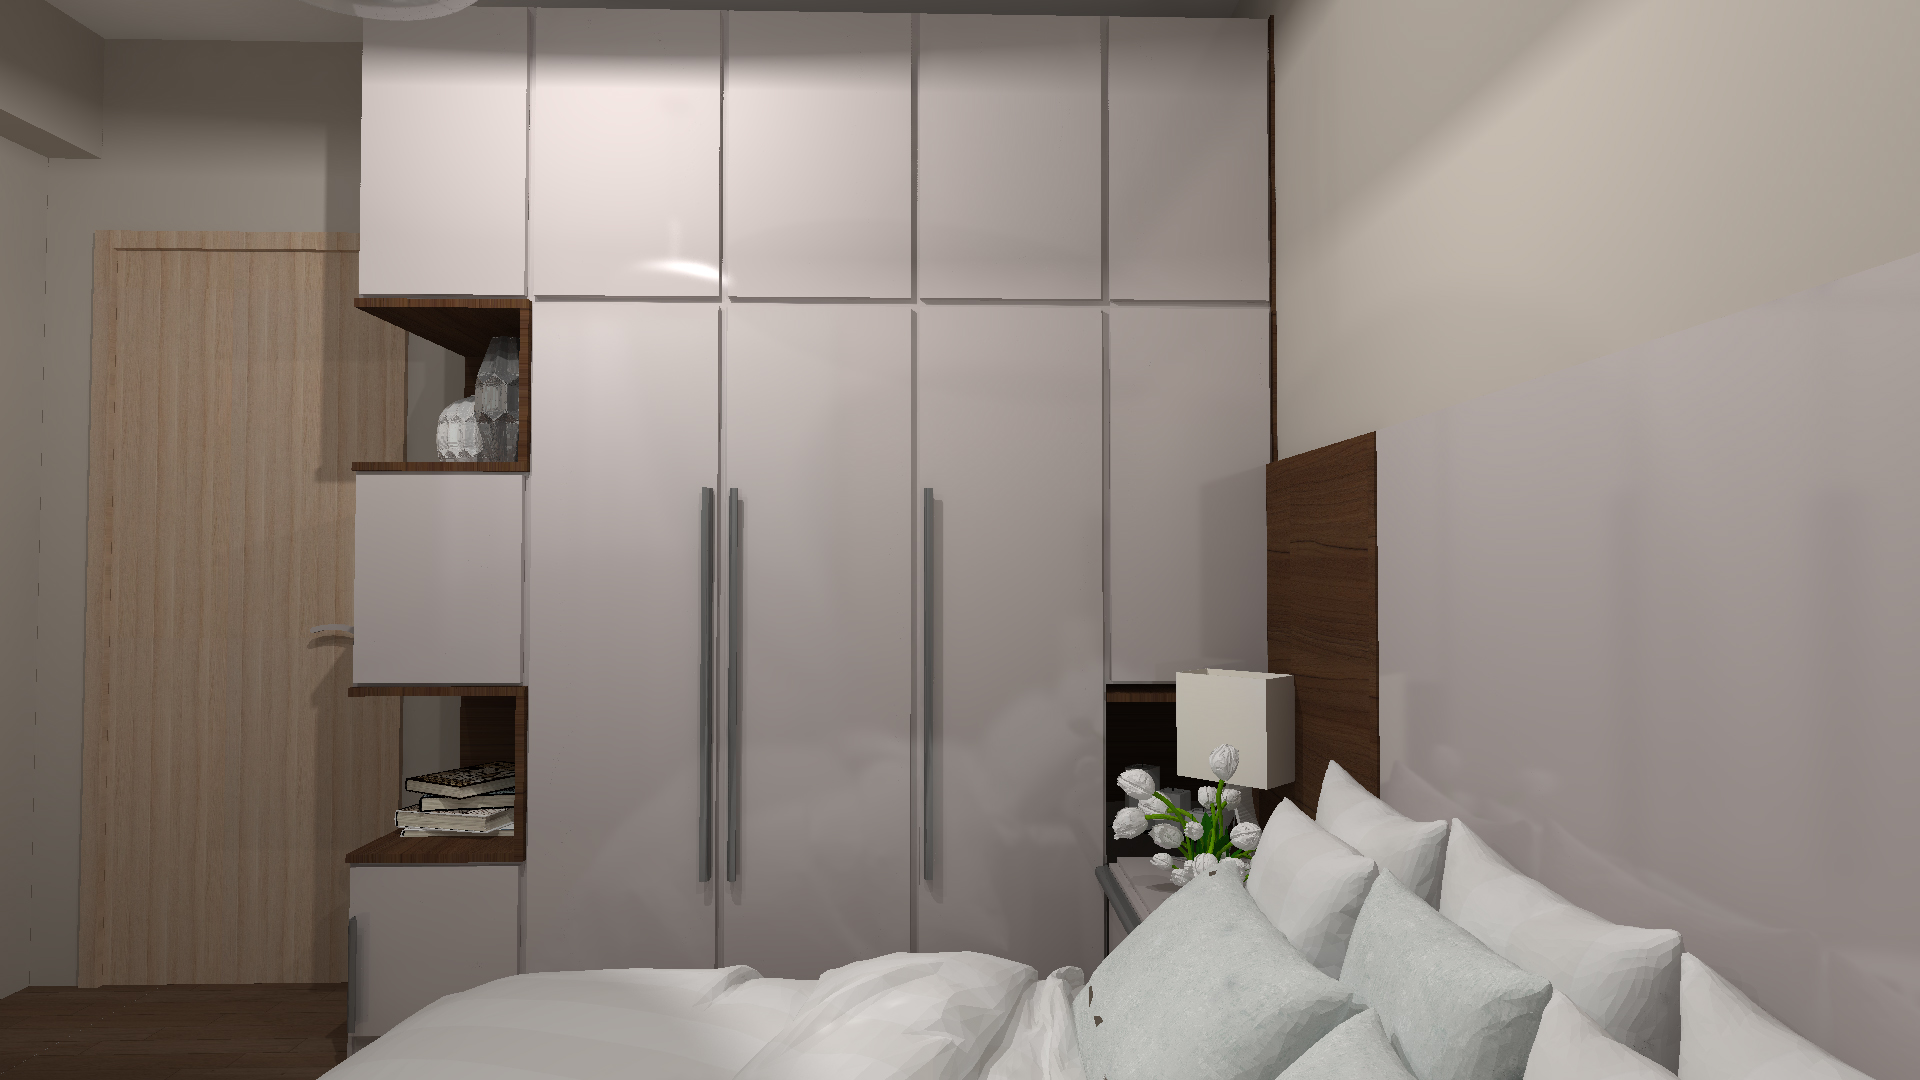 Proiect Design Interior Amenajare Apartament 1 Timisoara